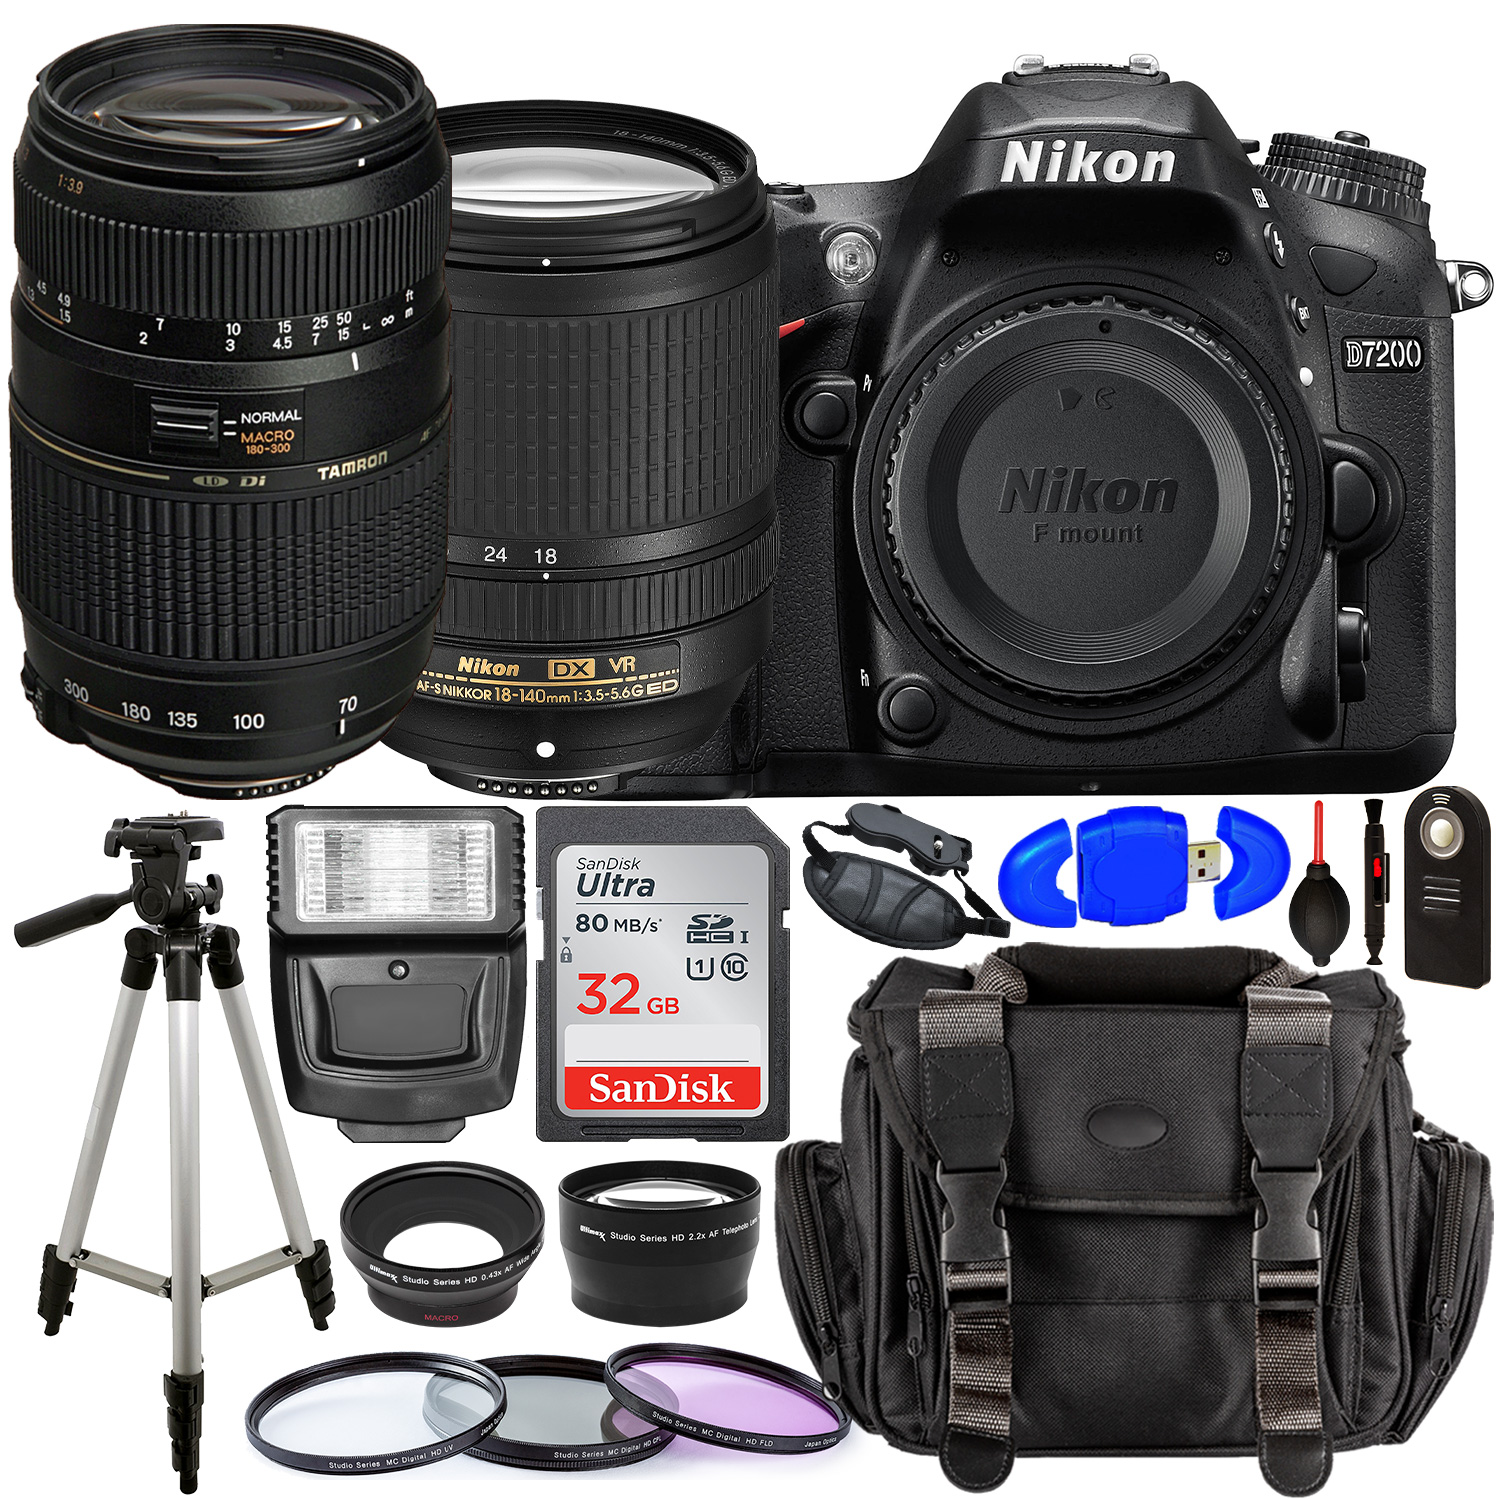 Nikon D7200 DSLR Camera with 18-140mm Lens (Black) â?? 1555 with Tamron 70-300mm Lens for Nikon AF - AF017NII-700 and Accessory Bundle